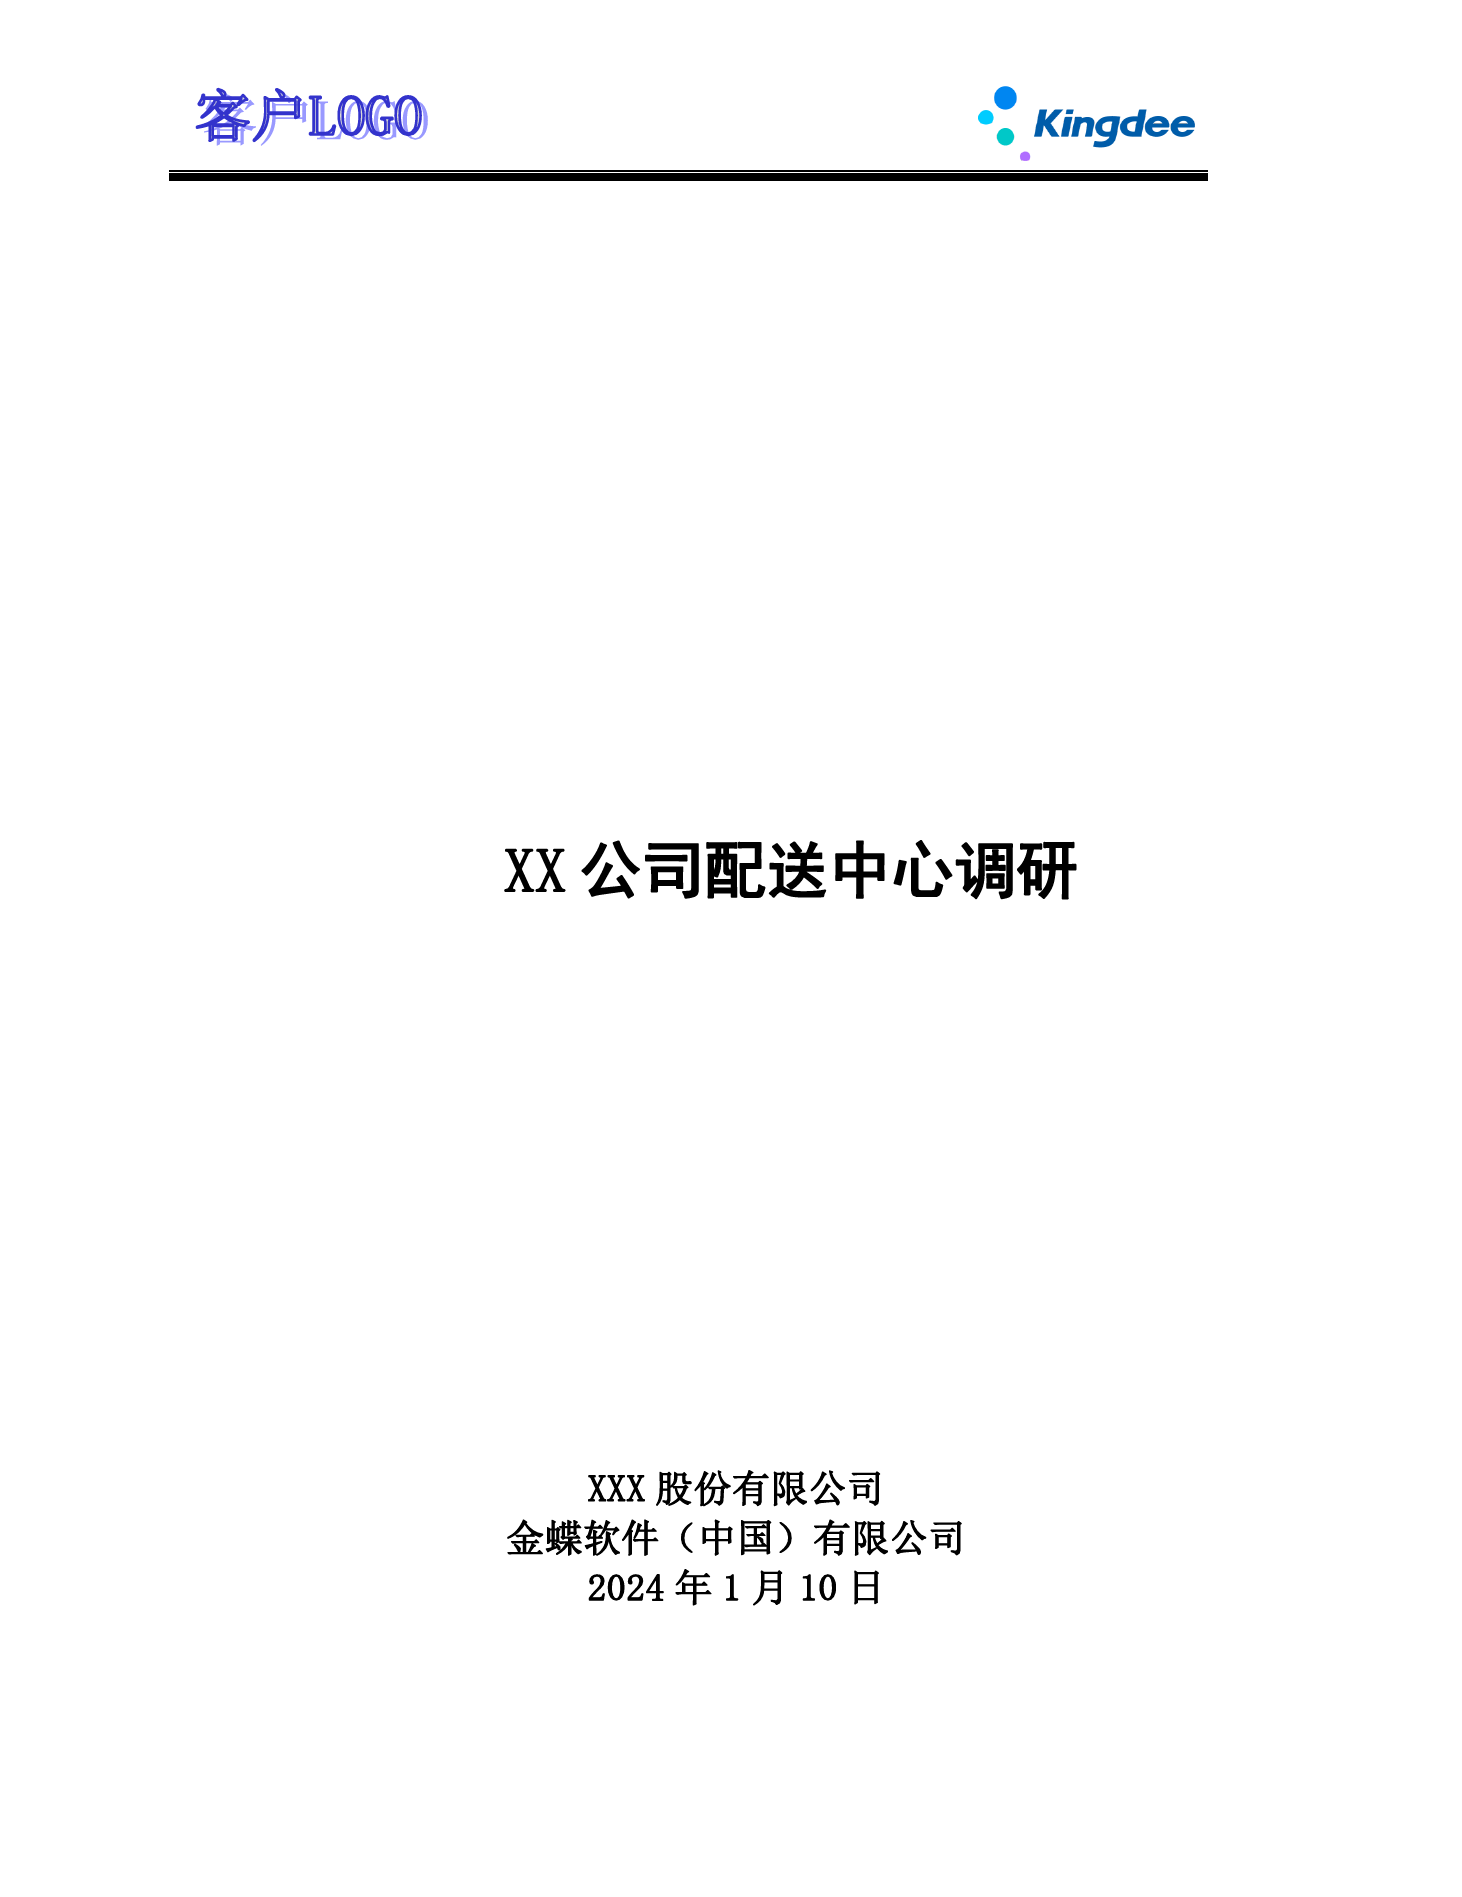 金蝶云社区-ECY2203 调研问卷 _配送中心V2.0